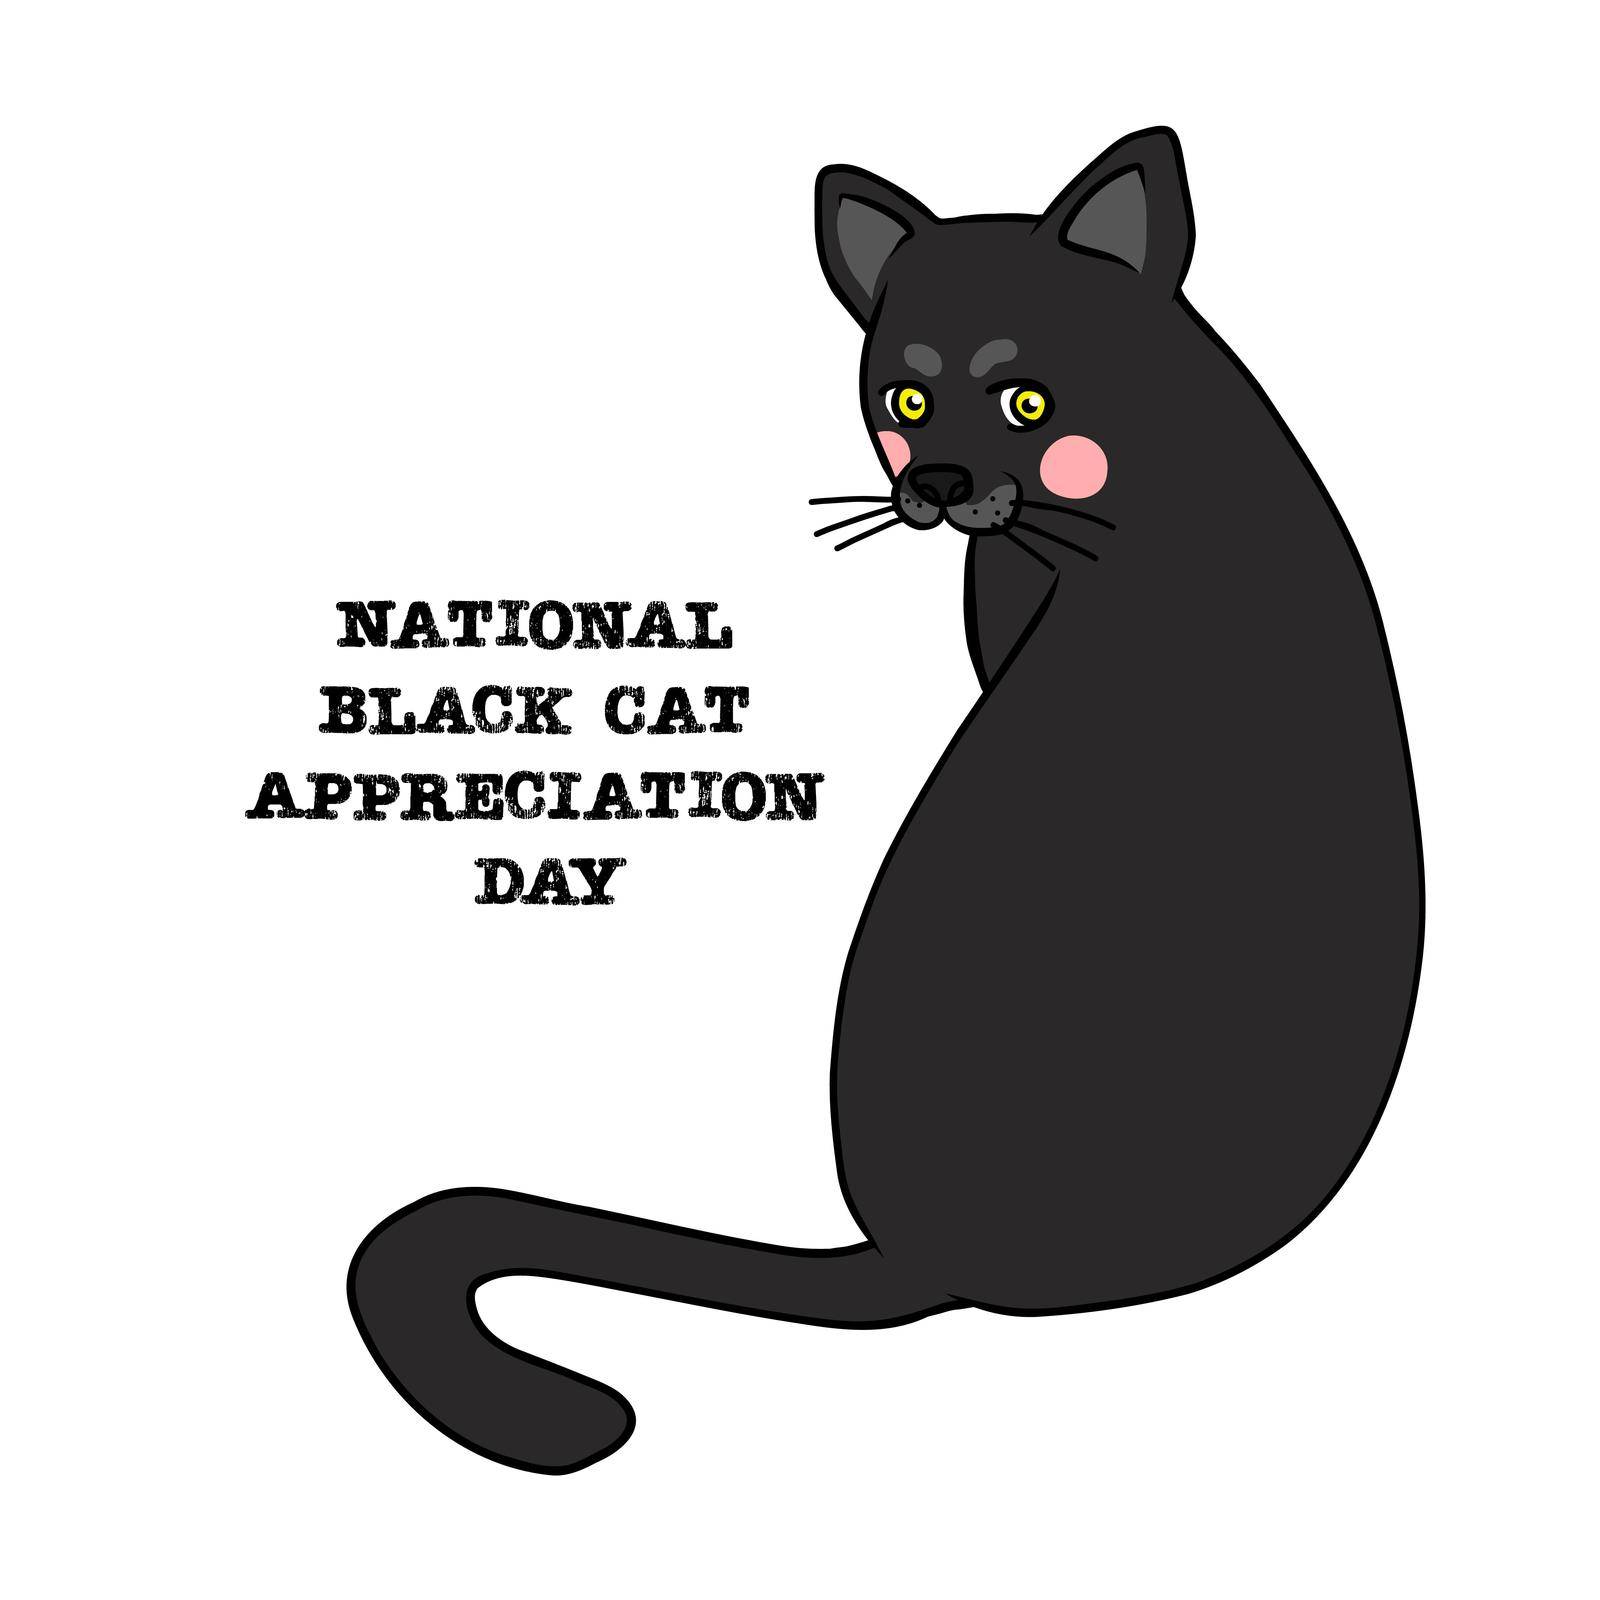 International black cat appreciation day cartoon vector illustration by Yoopho